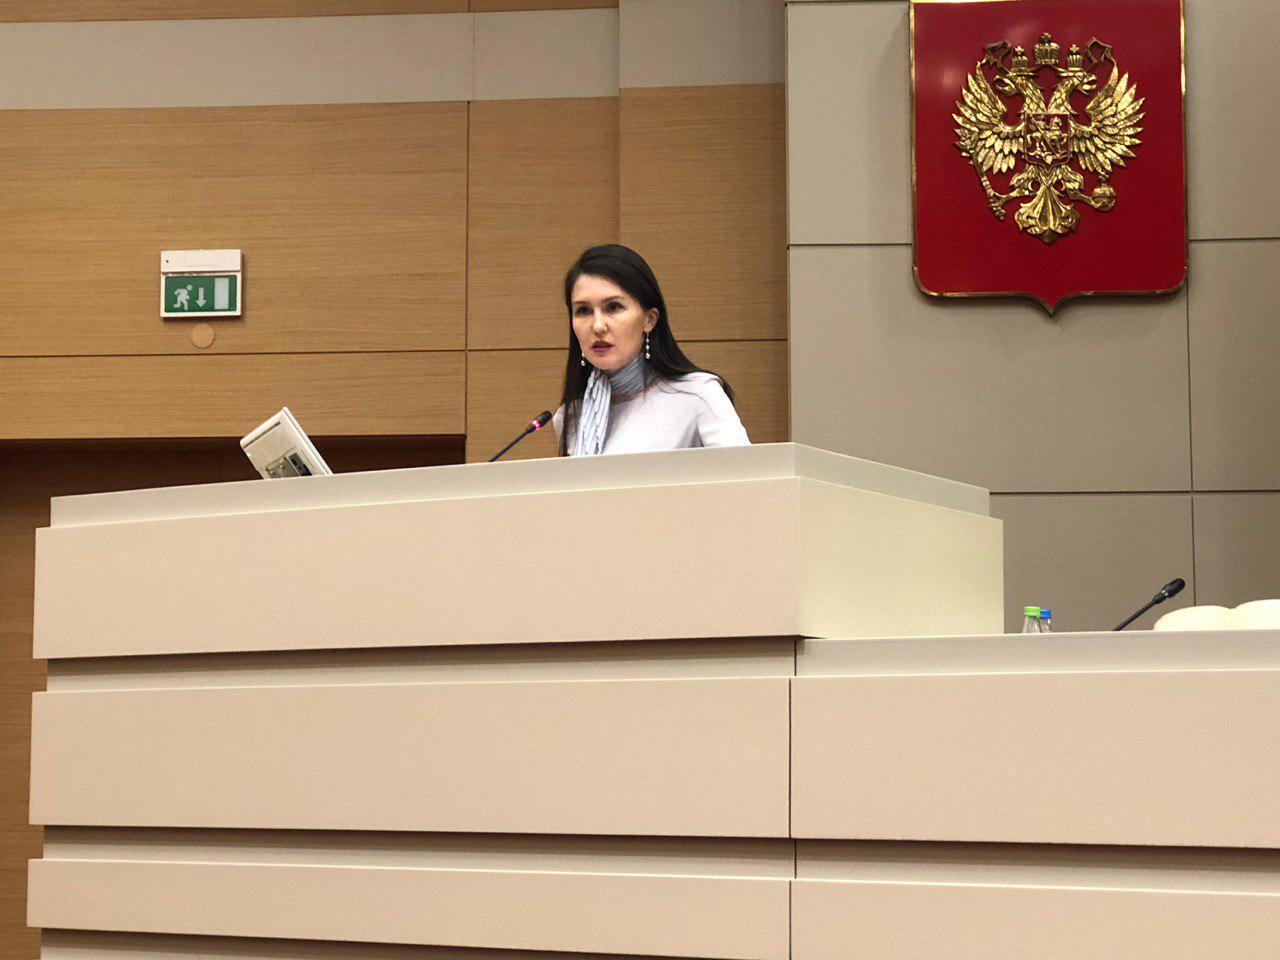 официальный представитель казанского Кремля Лилия Галимова